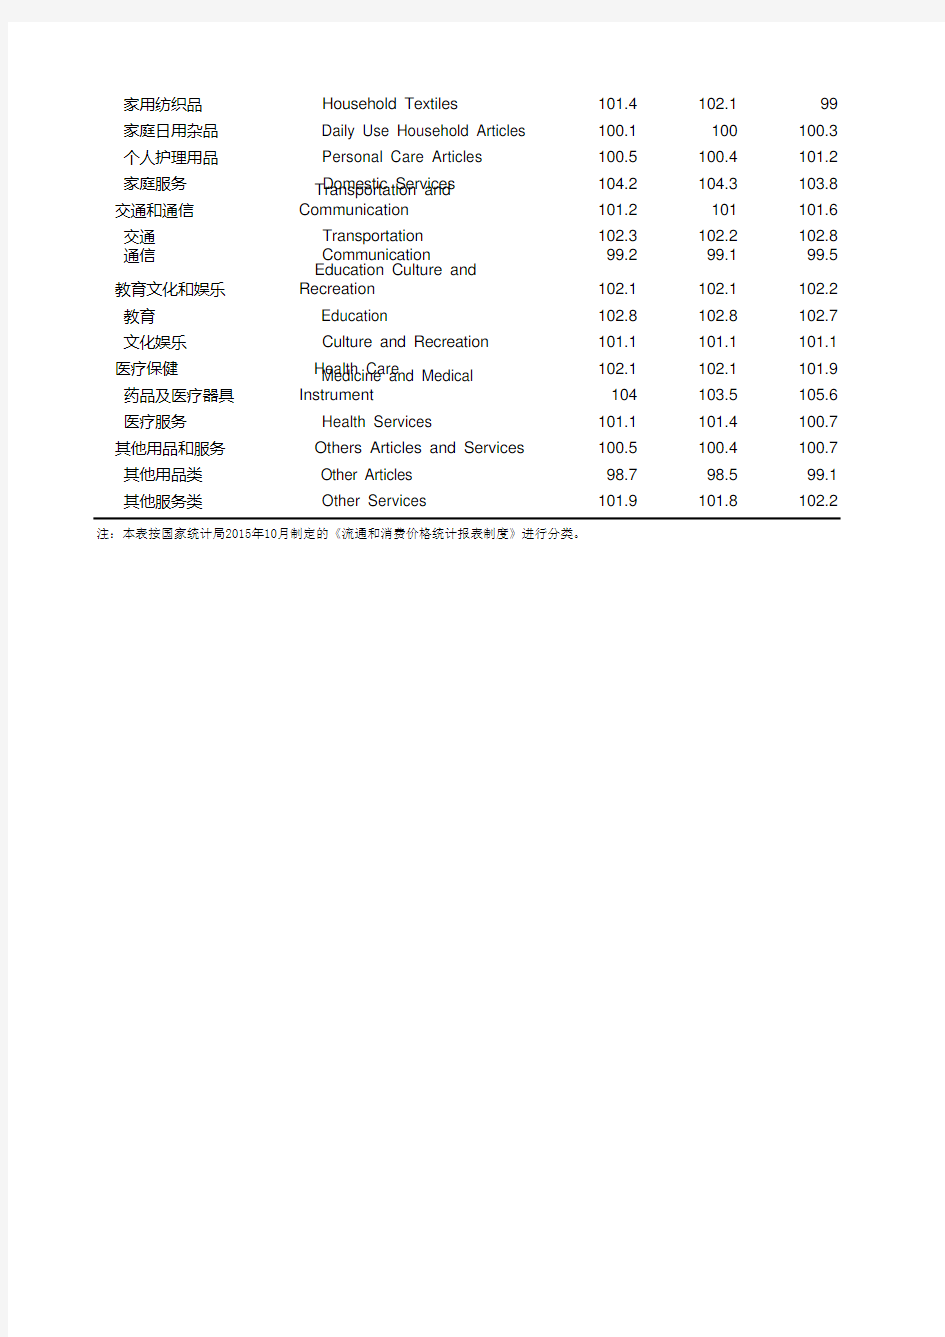 福建省社会经济发展统计年鉴数据：7-7 居民消费价格分类指数(2018年)